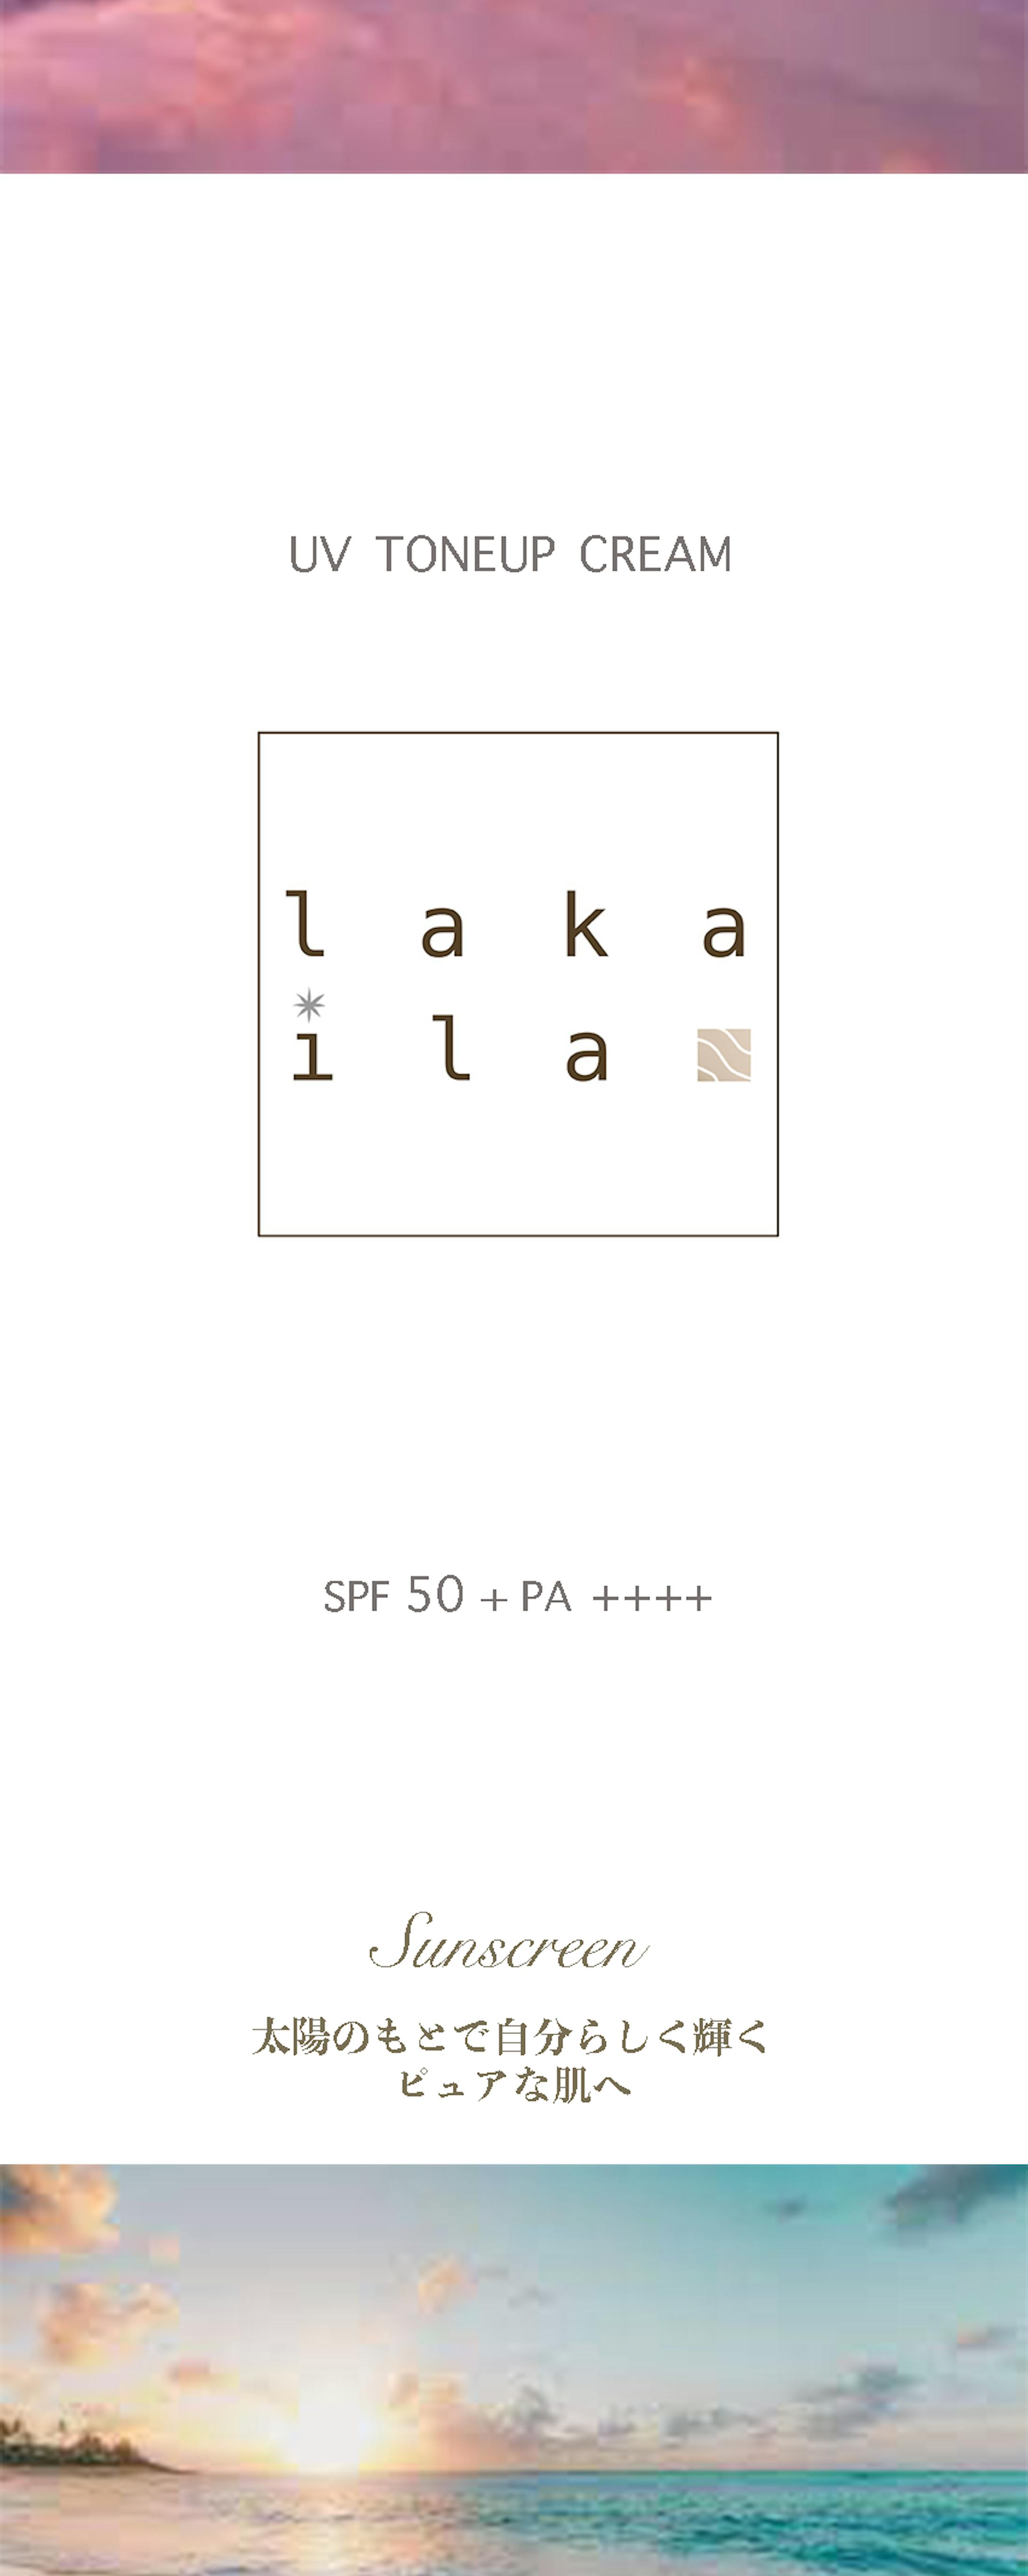 【Lakaira】パッケージとロゴデザイン-2